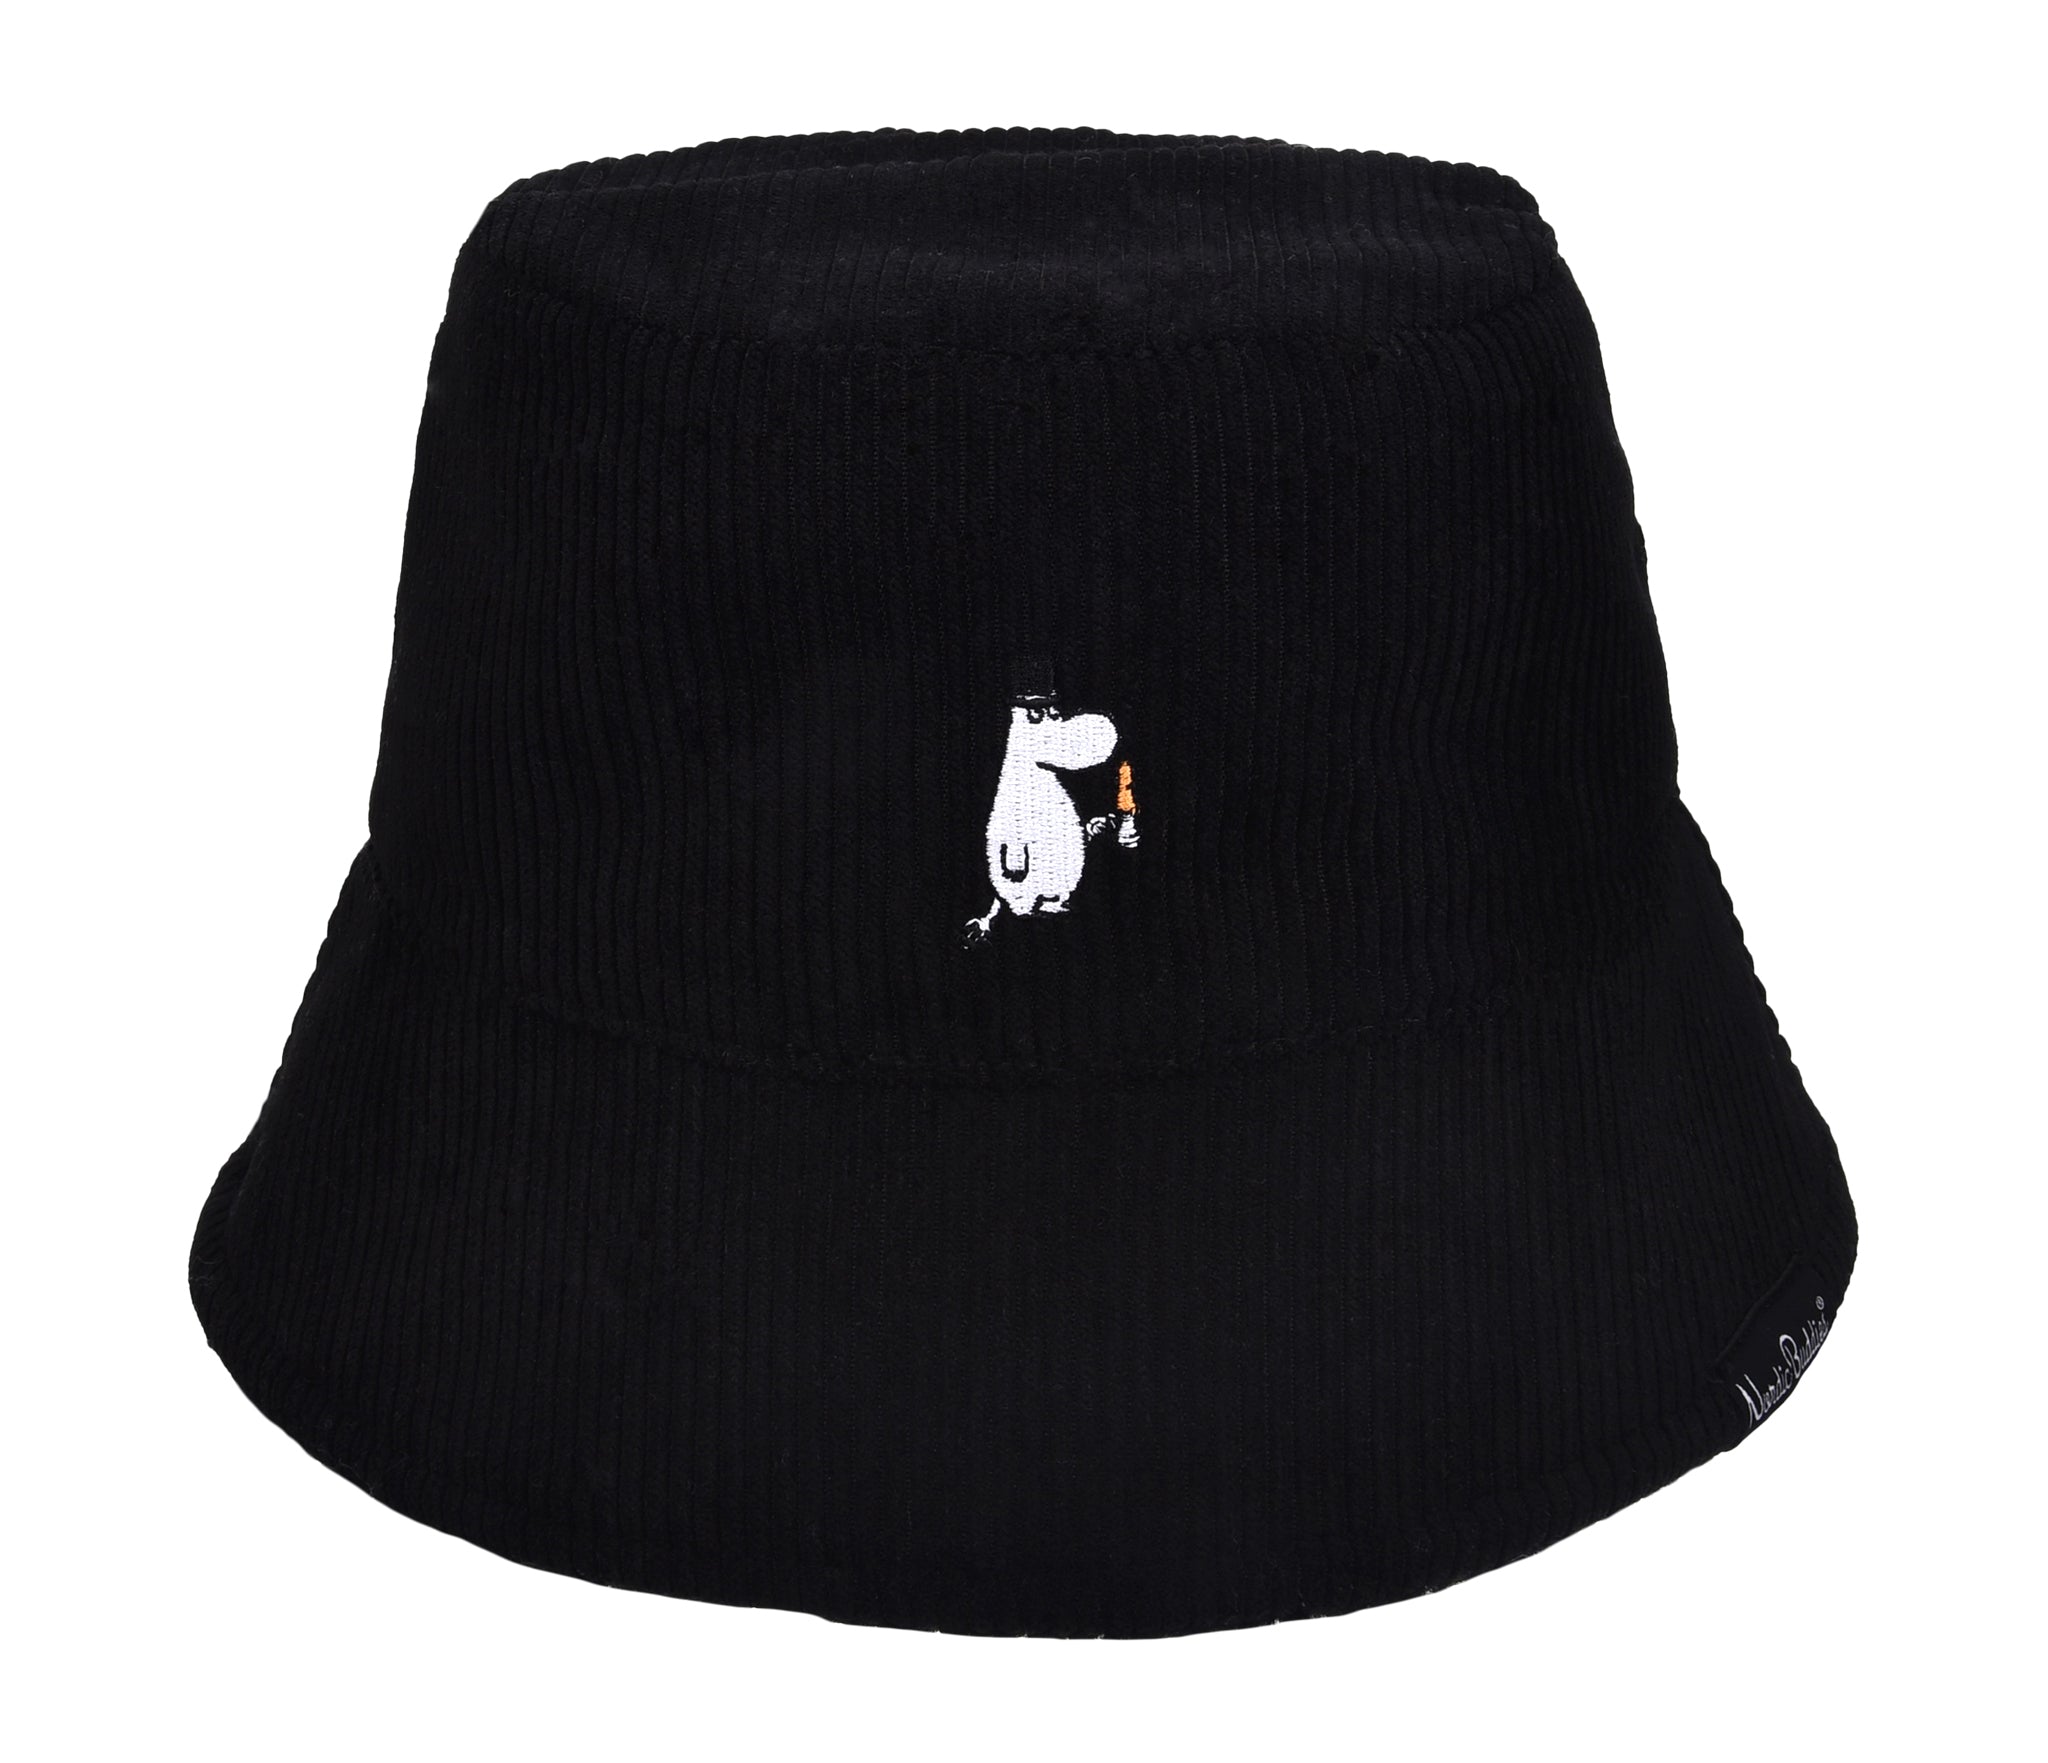 Moominpappa Candle Light Bucket Hat Corduroy - Black